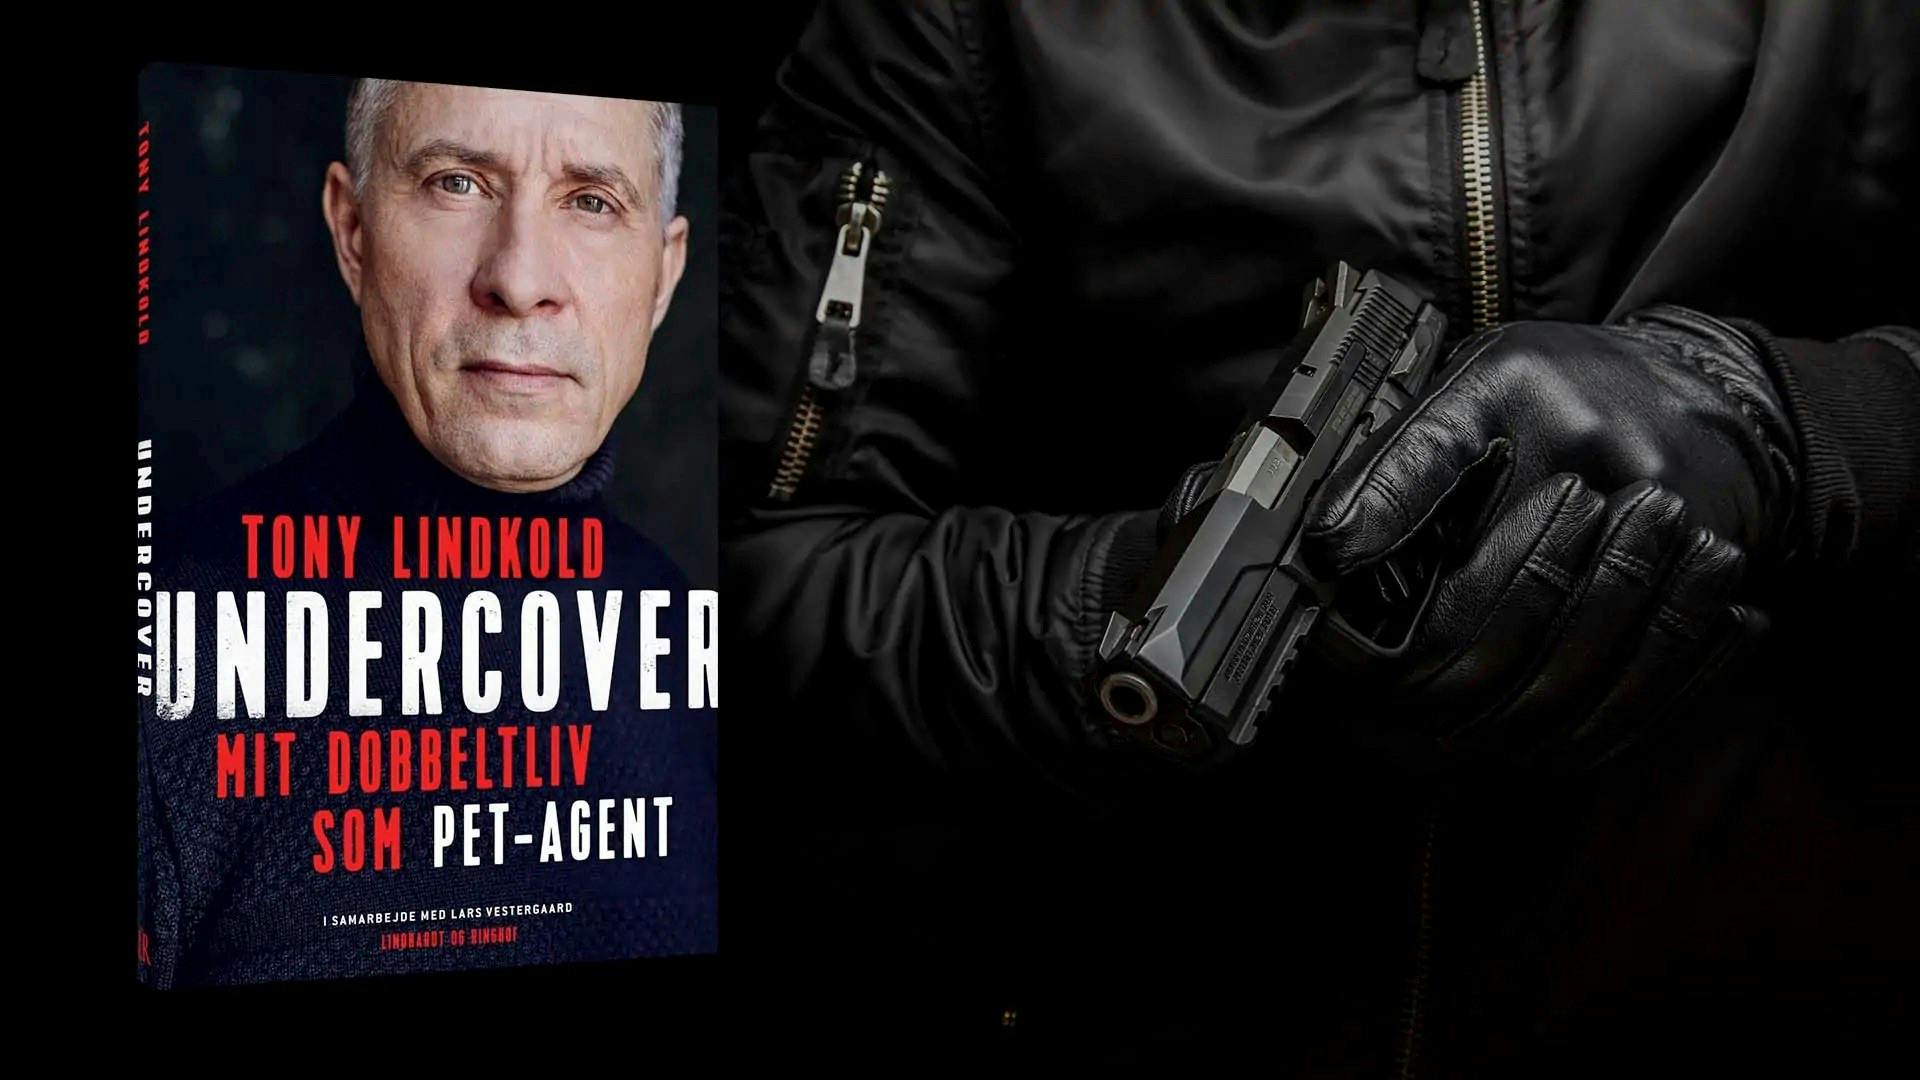 Tony har skrevet bogen ”Undercover – Mit dobbeltliv som PET-agent” om sine oplevelser som undercoveragent. Bogen udkom i 2022 ved forlaget Lindhardt og Ringhof.
